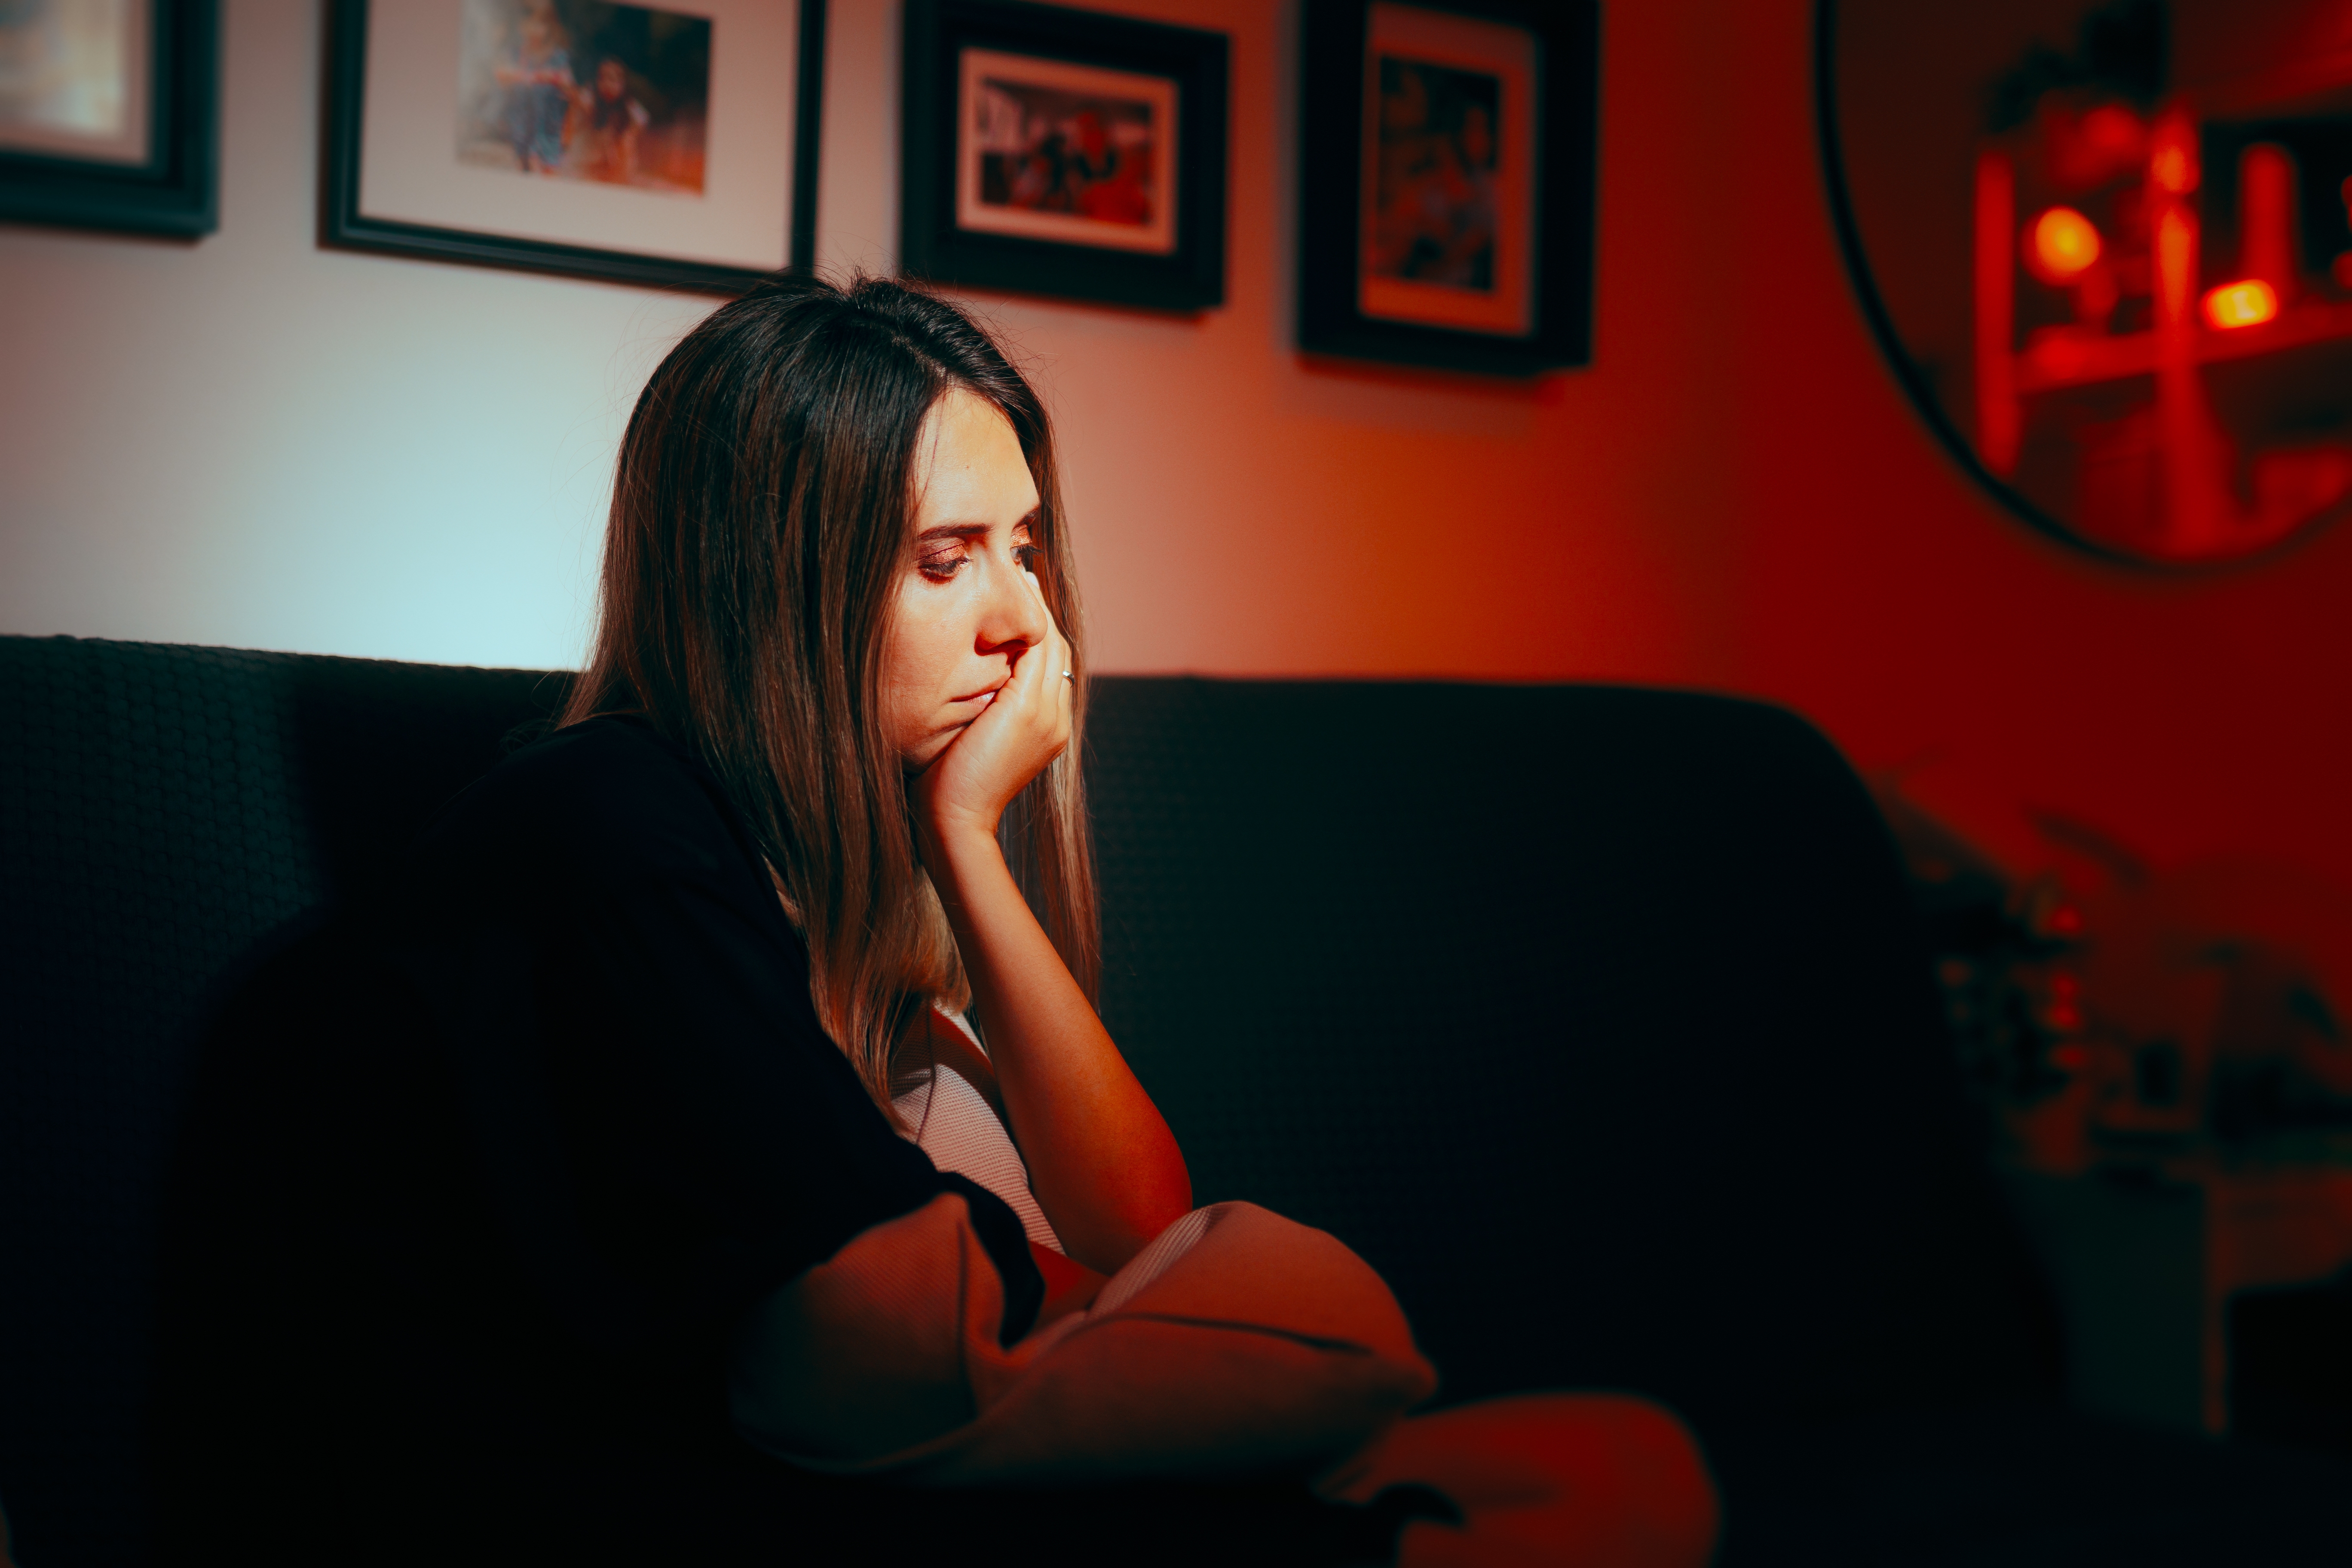 Femme déprimée assise seule la nuit | Source : Shutterstock